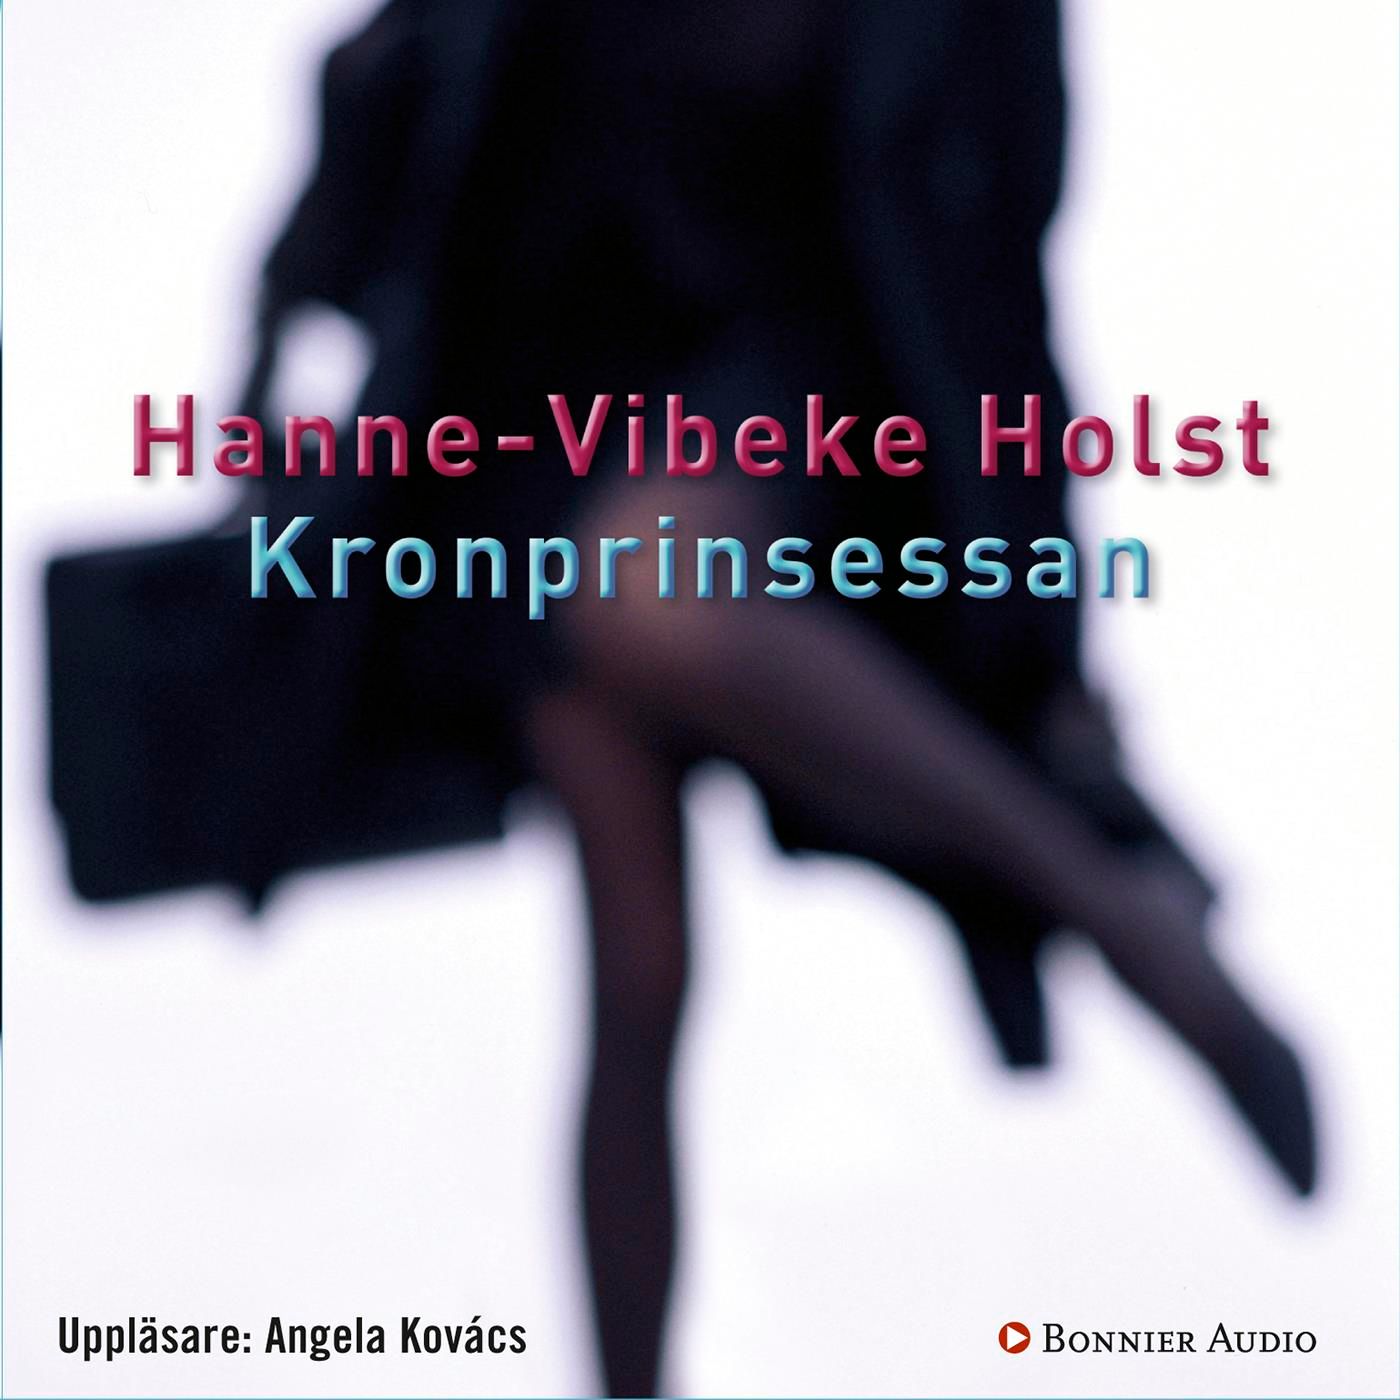 Kronprinsessan, audiobook by Hanne-Vibeke Holst